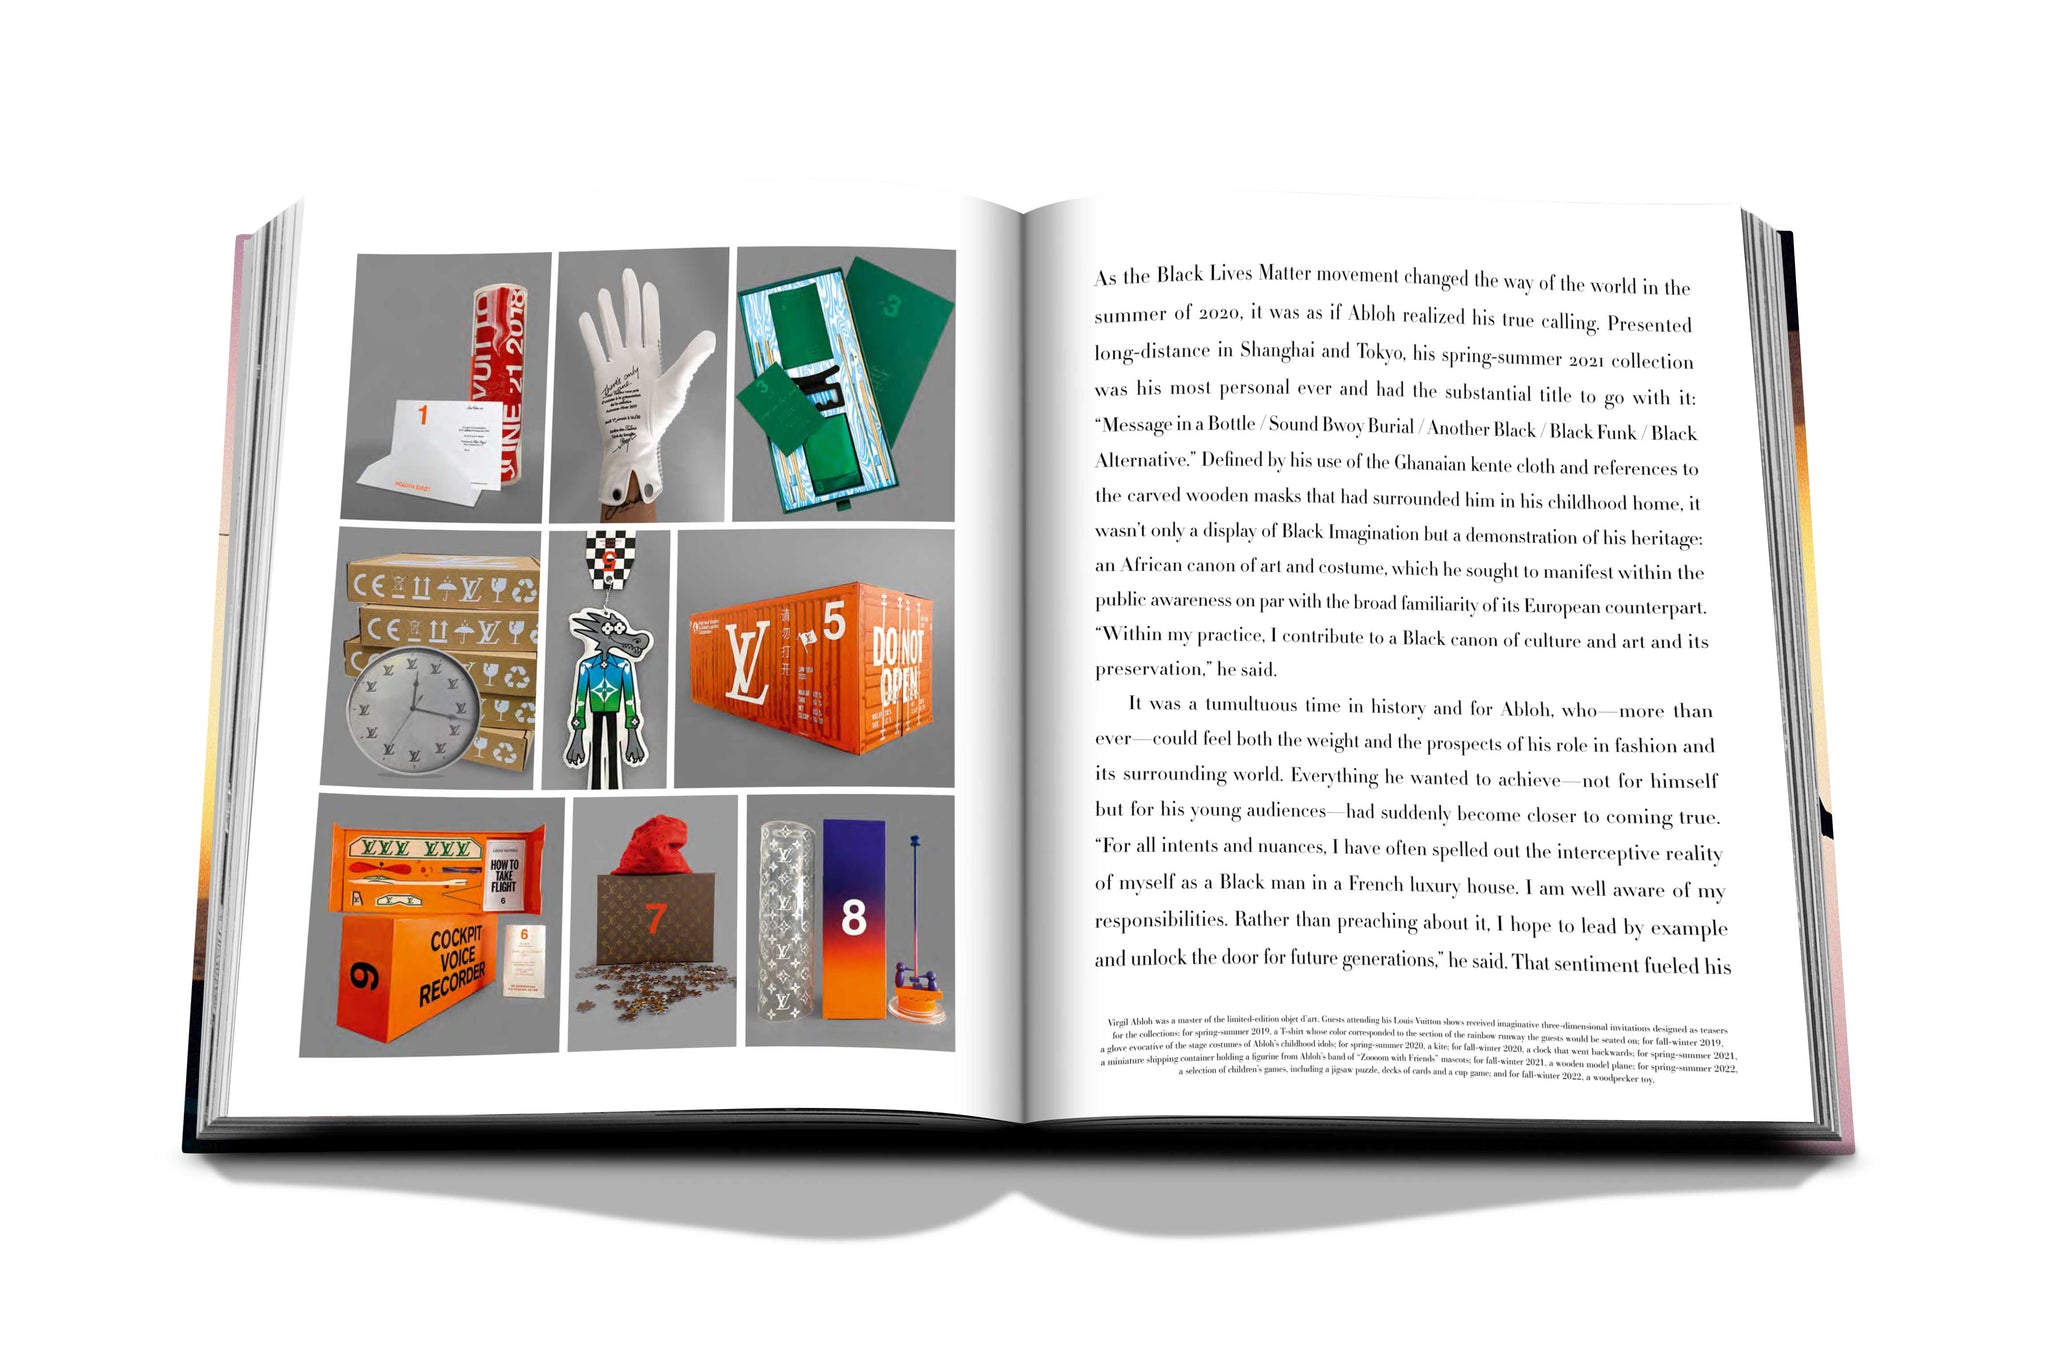 Virgil Abloh Designs Limited-Edition MoÃ«t & Chandon Bottle: Exclusive